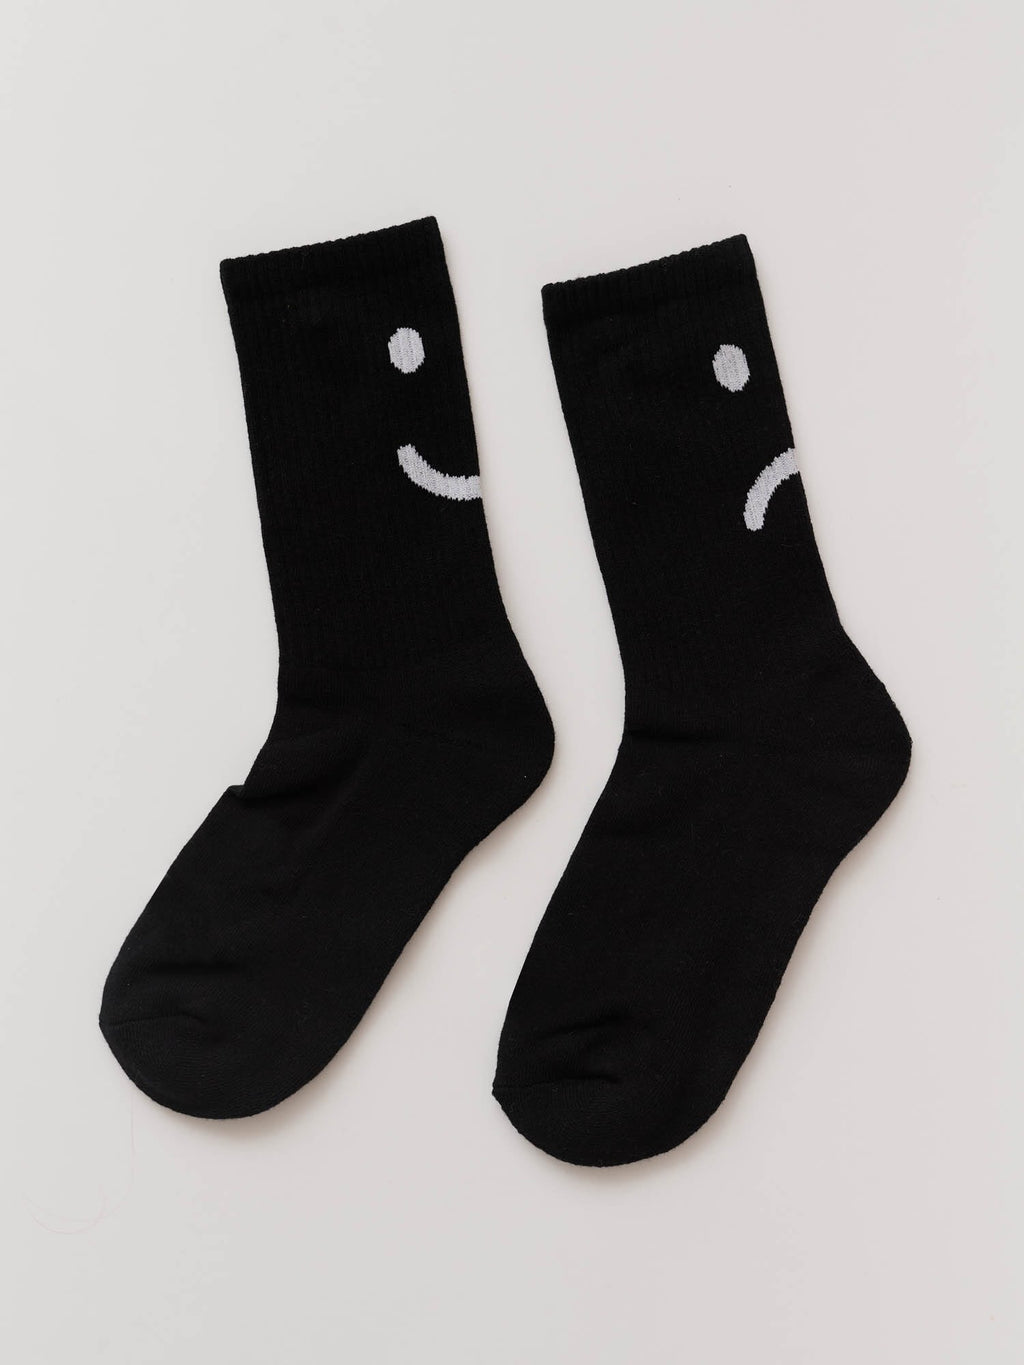  HAPPYPOP Barber Socks For Men Hairstylist Socks Hairdresser  Socks